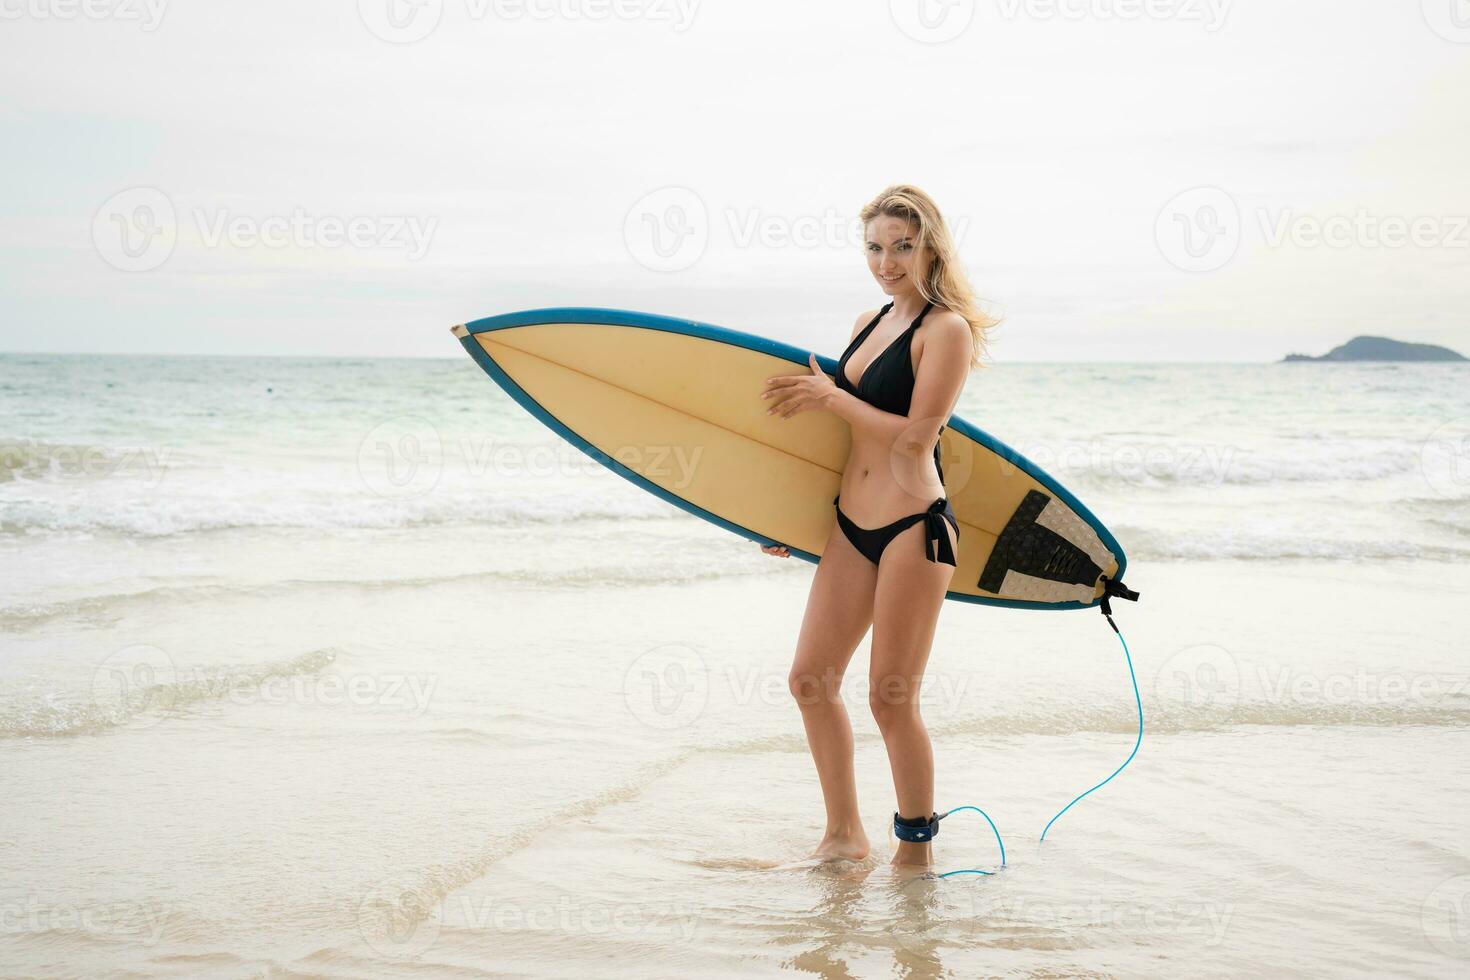 surfare flicka med henne surfingbräda på de strand. foto